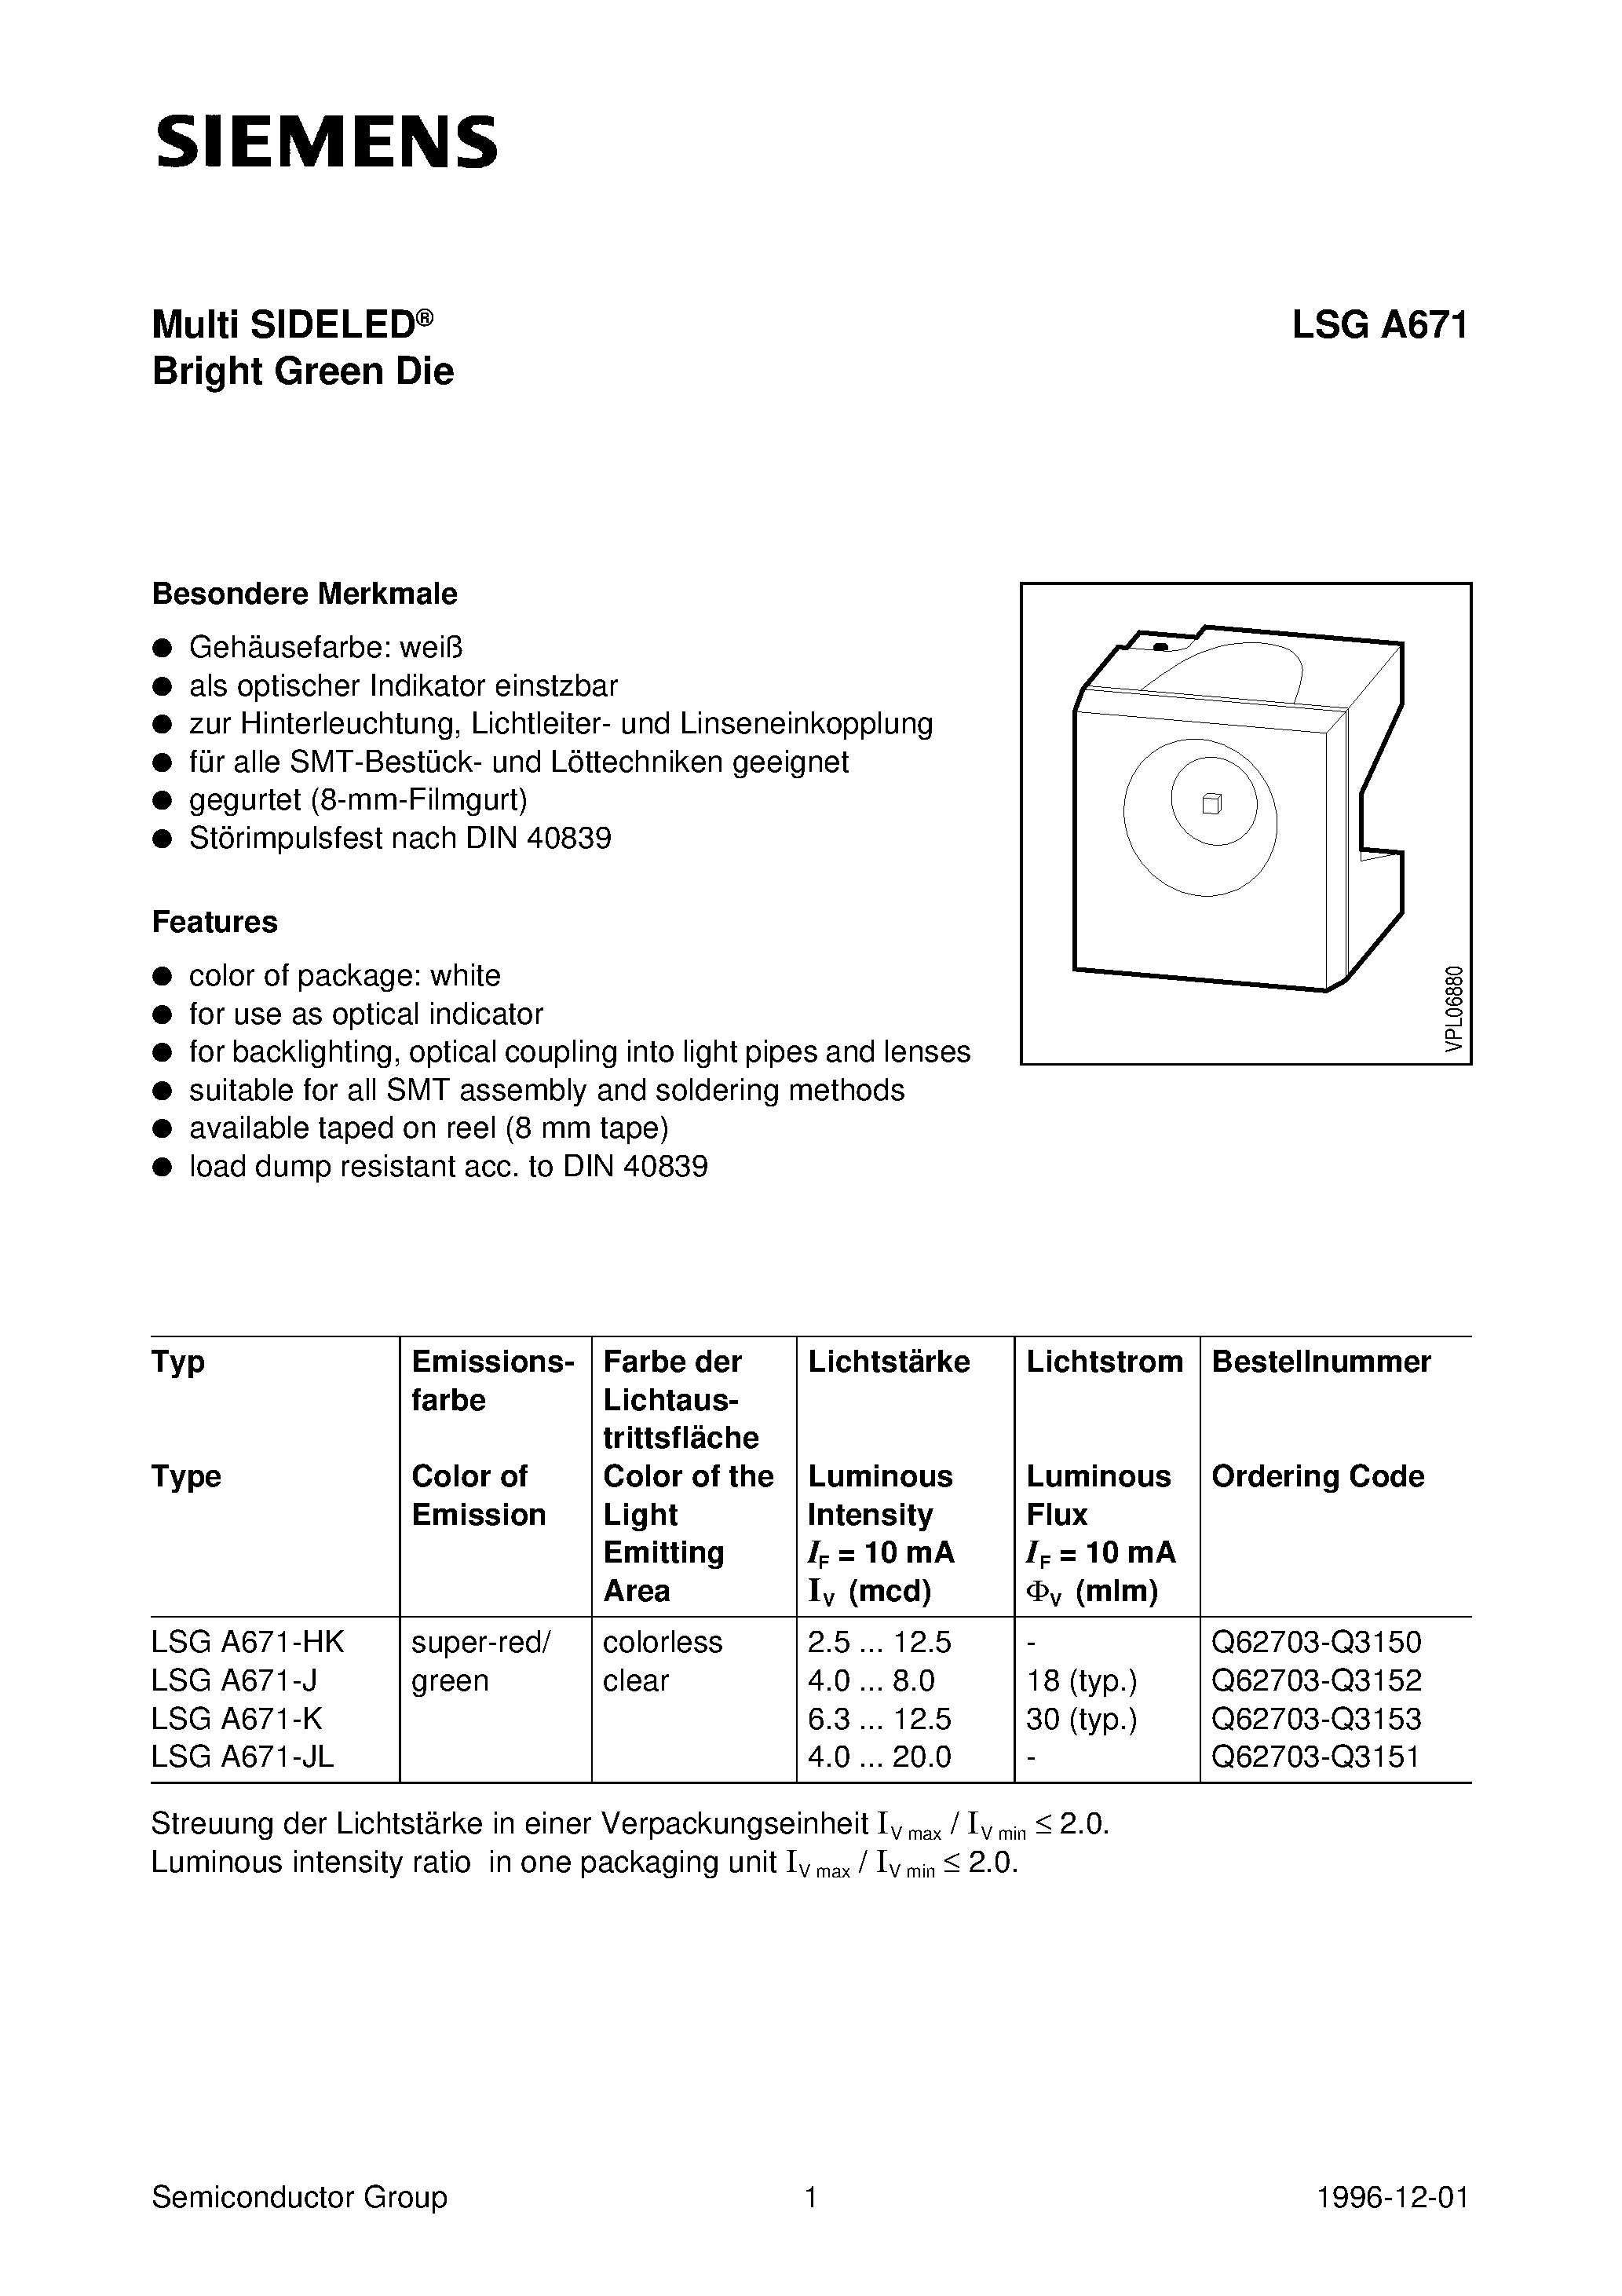 Datasheet LSGA671-K - Multi SIDELED Bright Green Die page 1